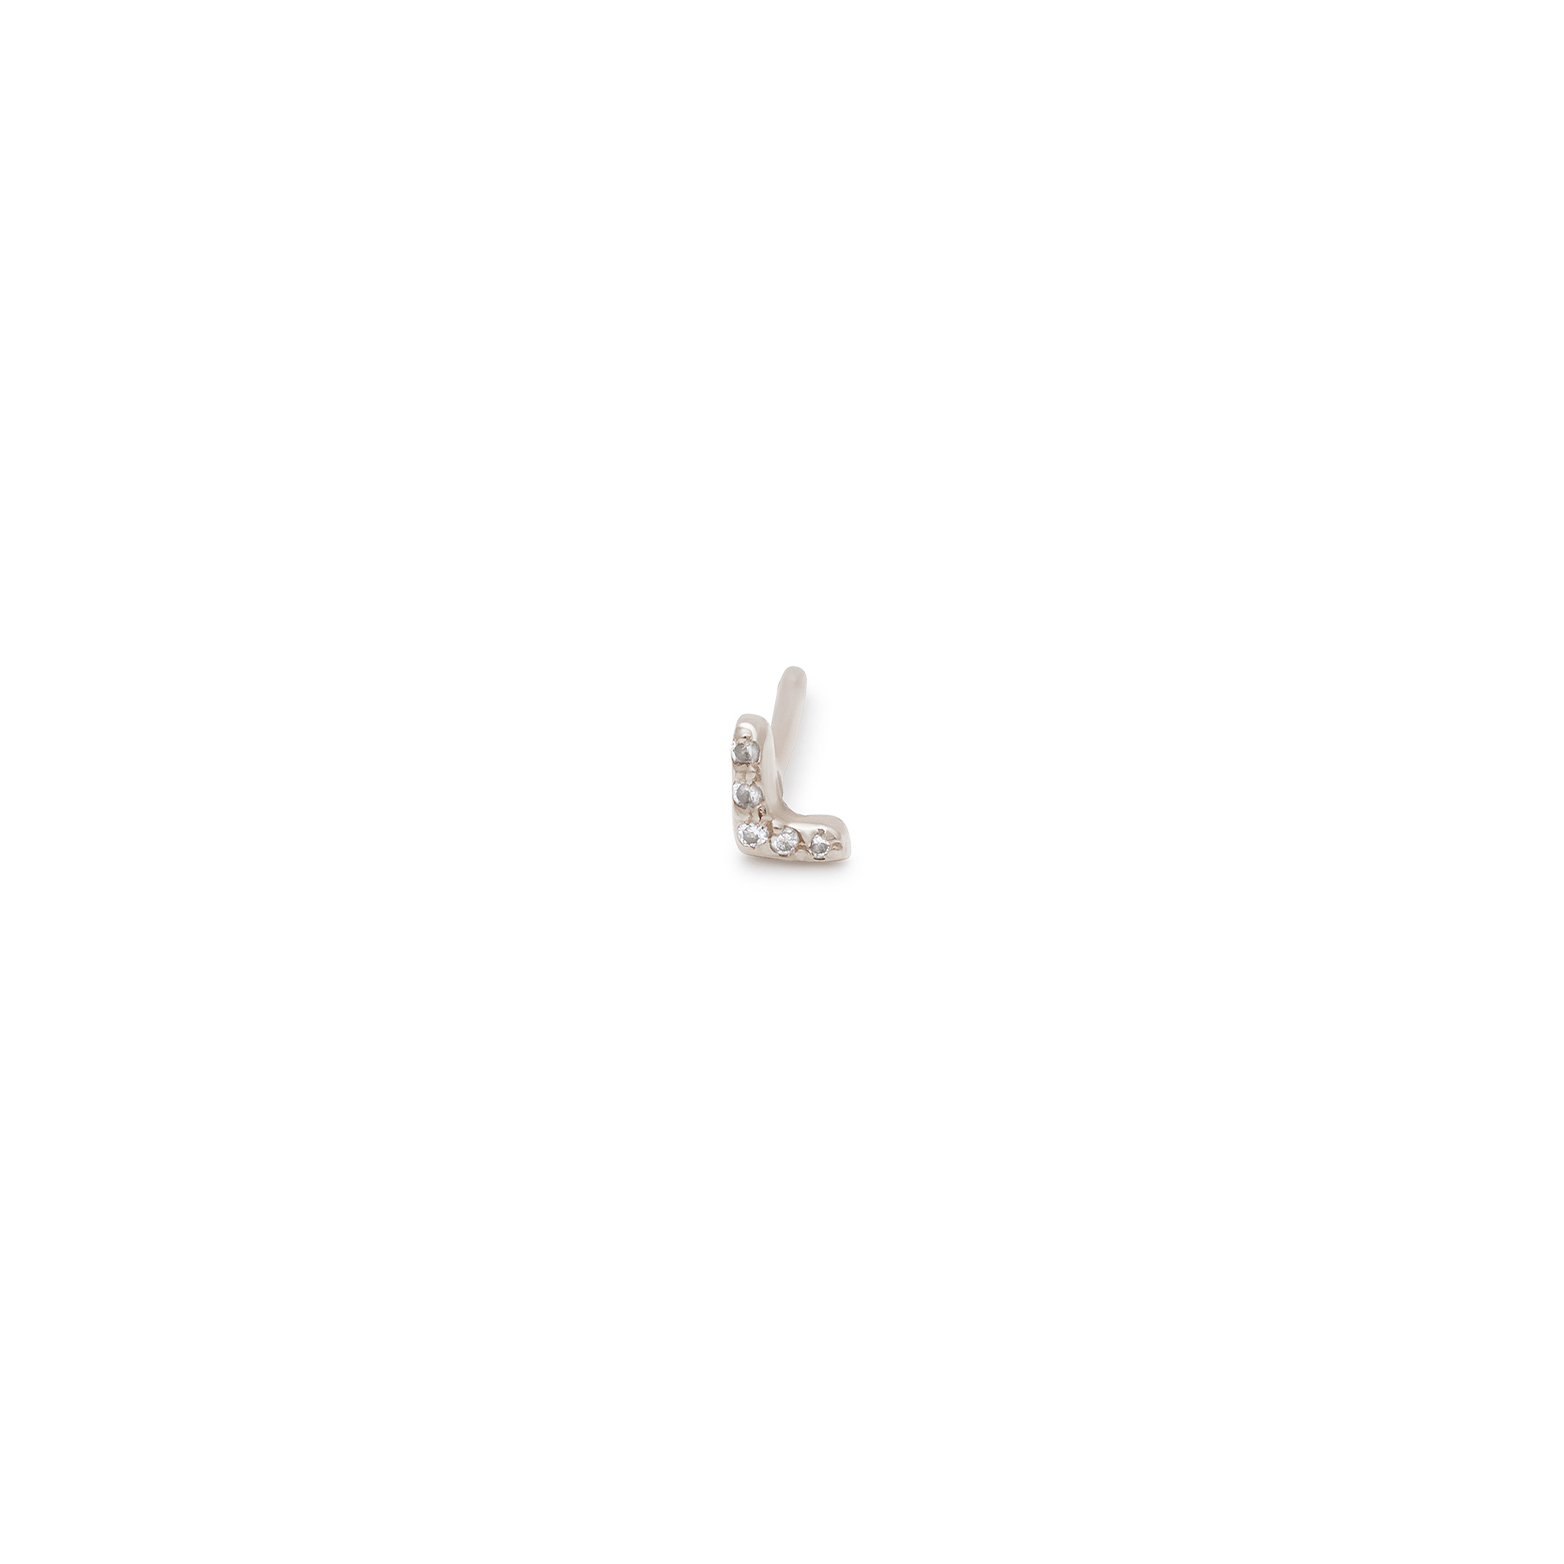 14k white gold diamond encrusted letter stud earring